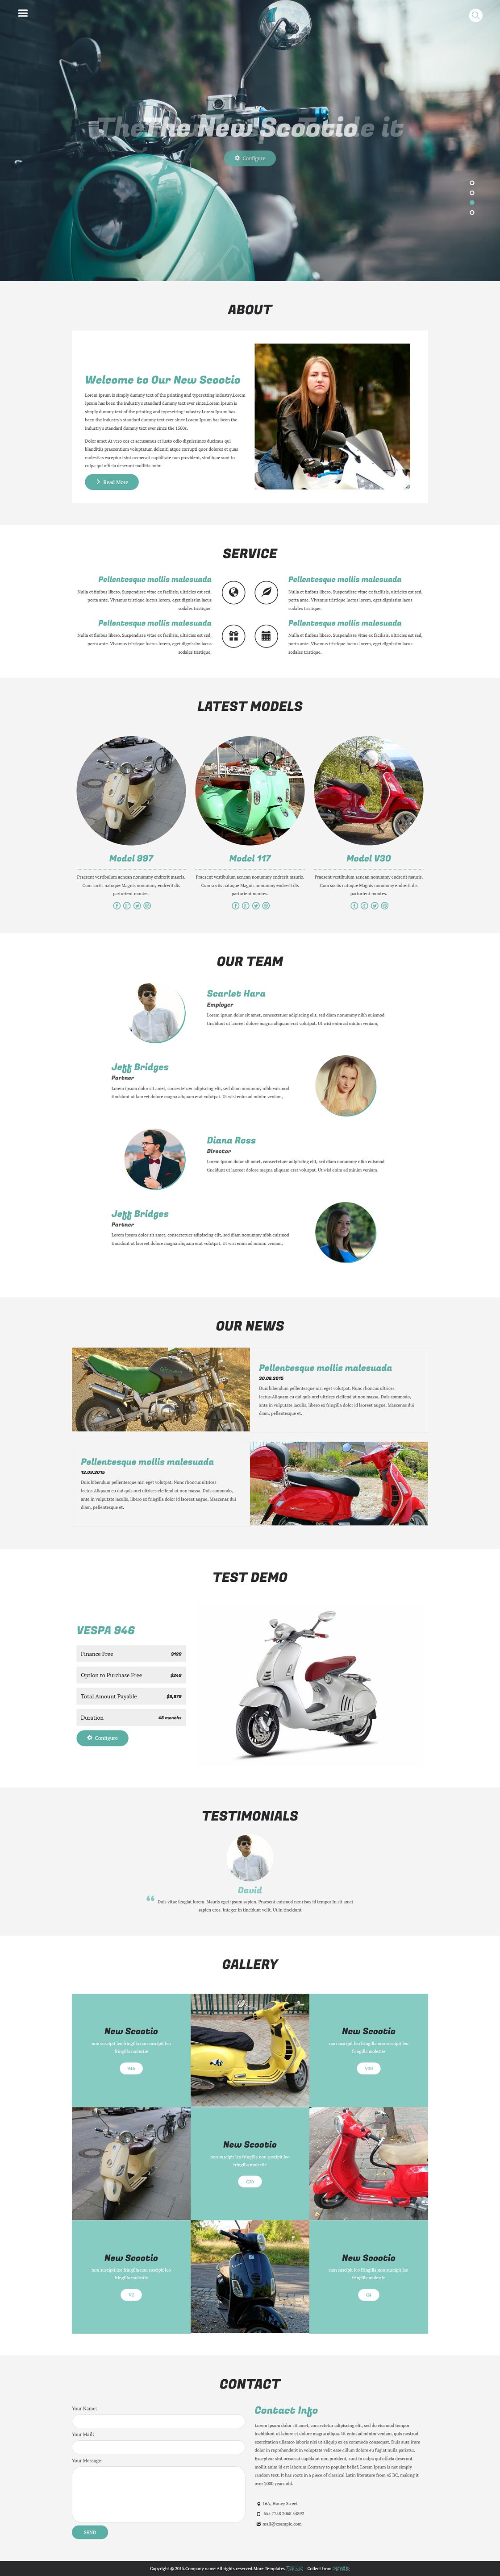 绿色摩托车产品展示页面html5模板